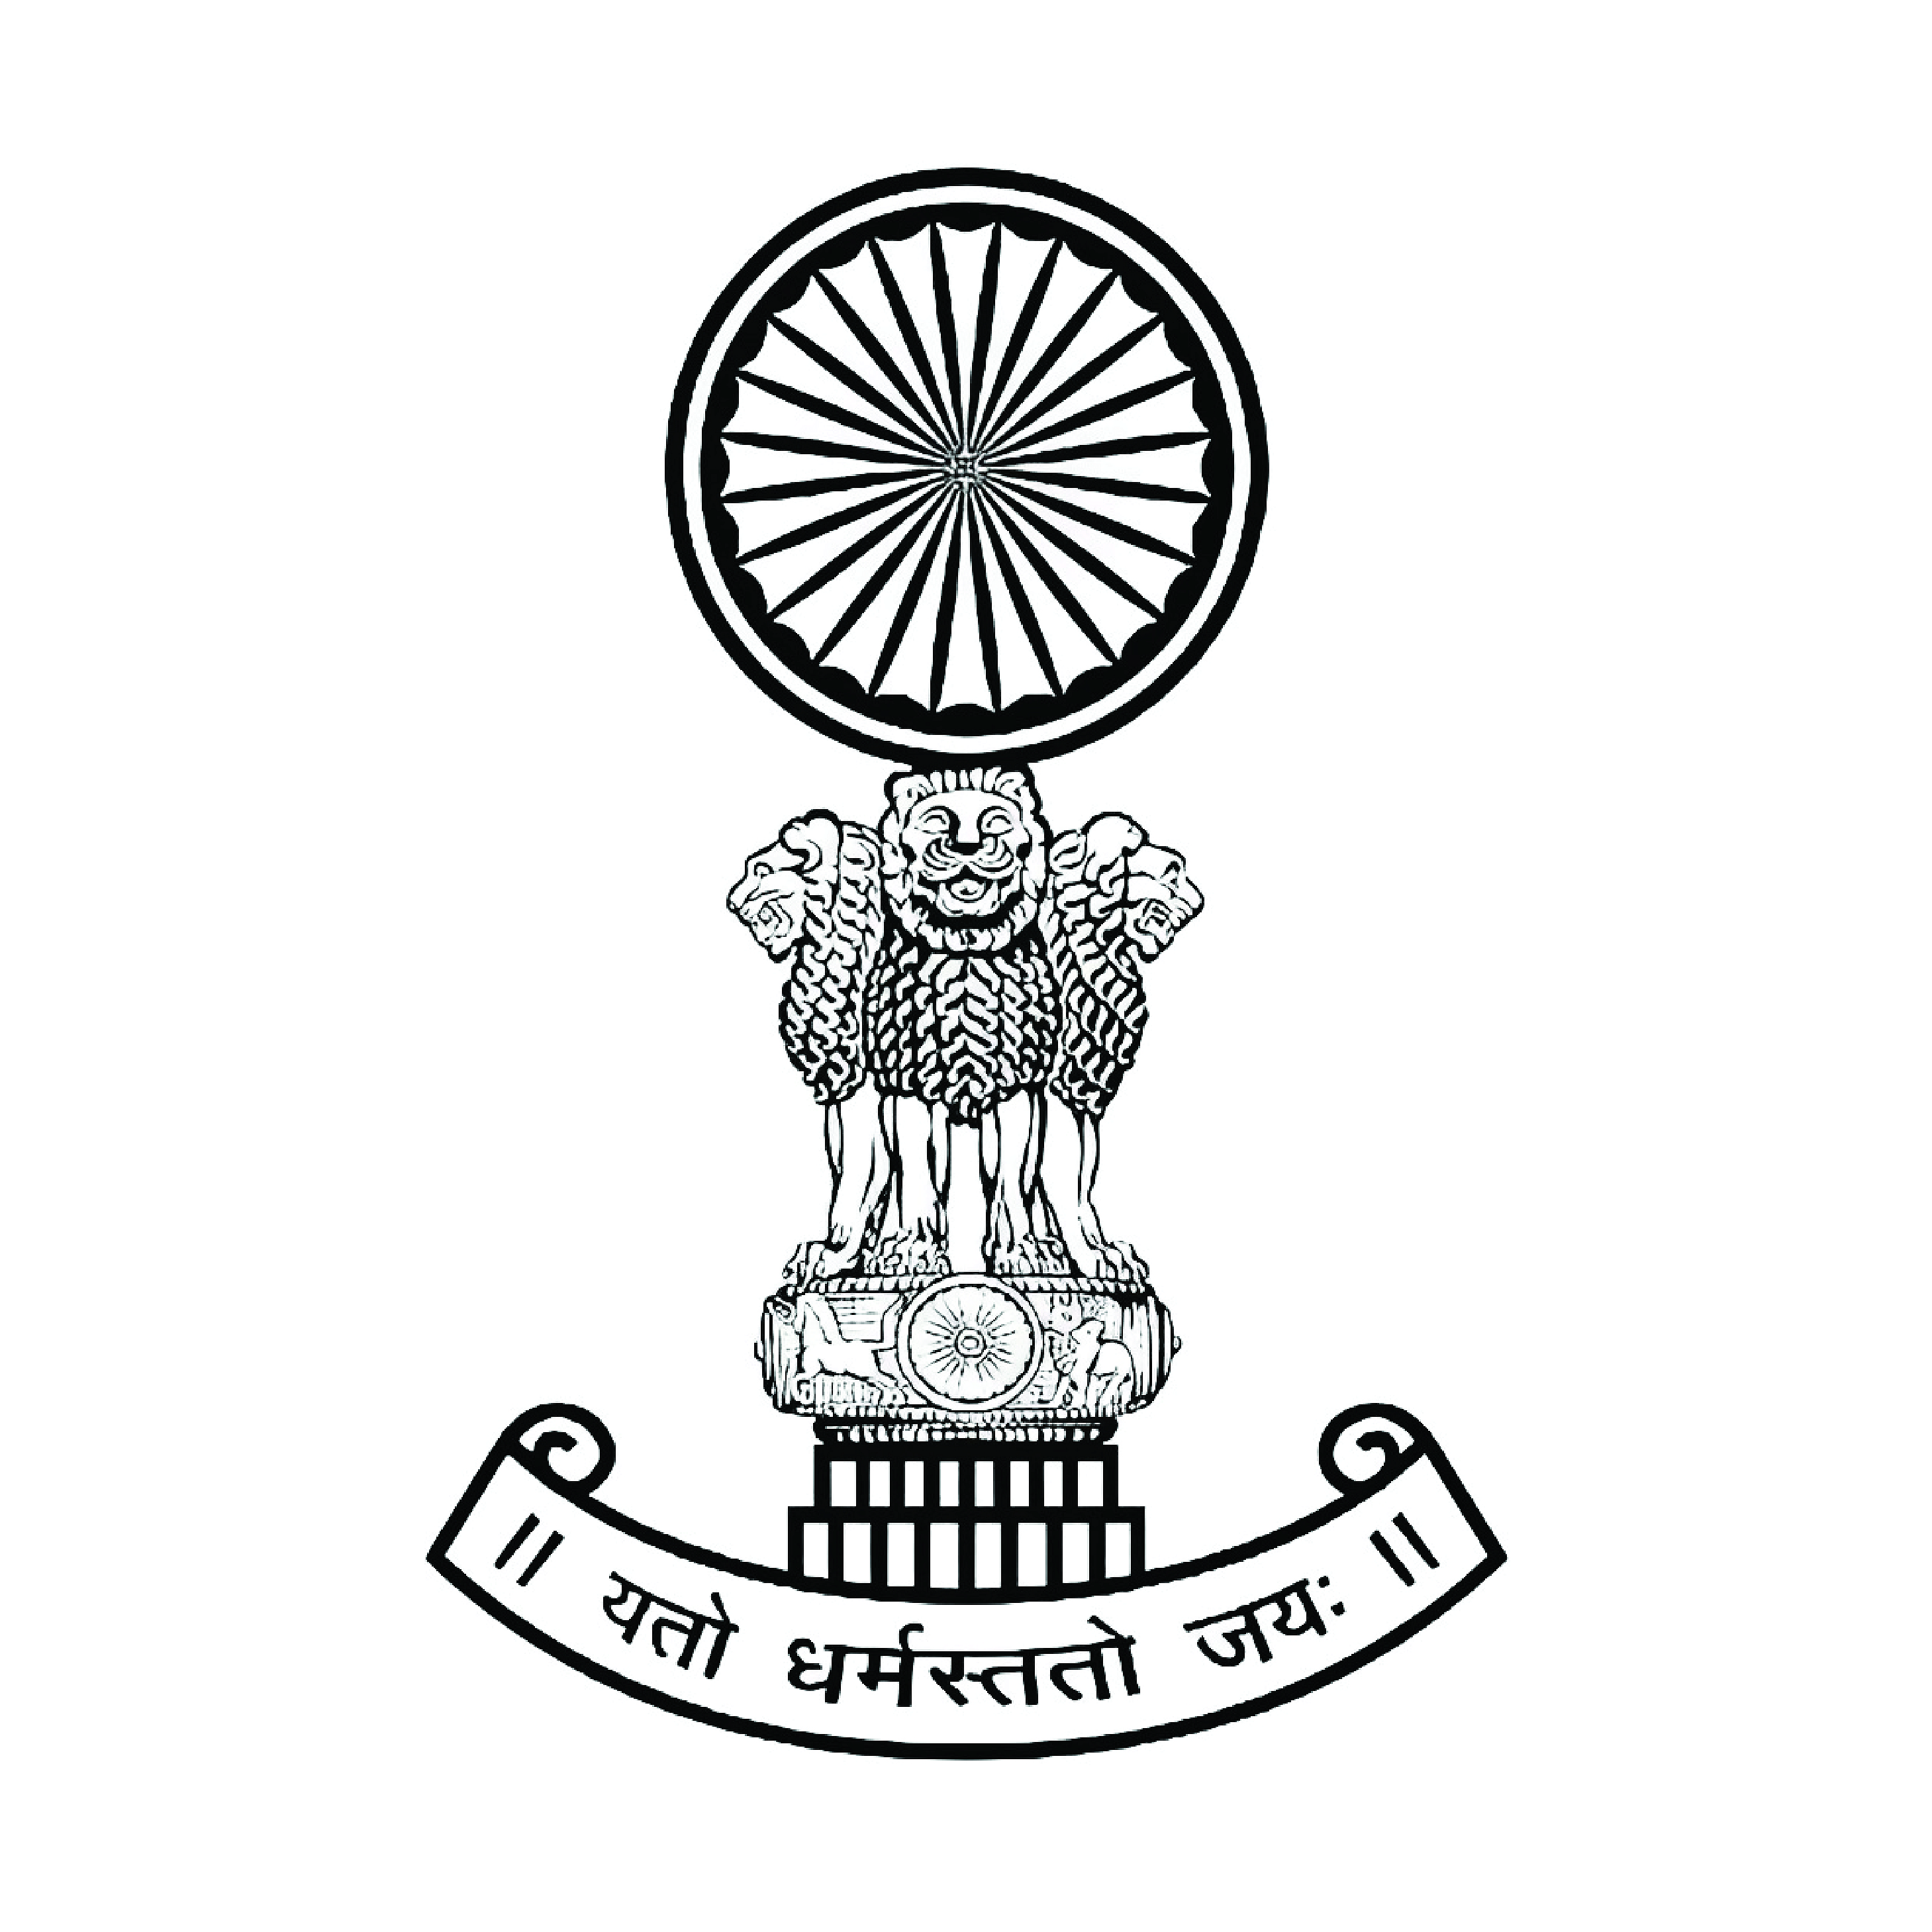 герб индии на